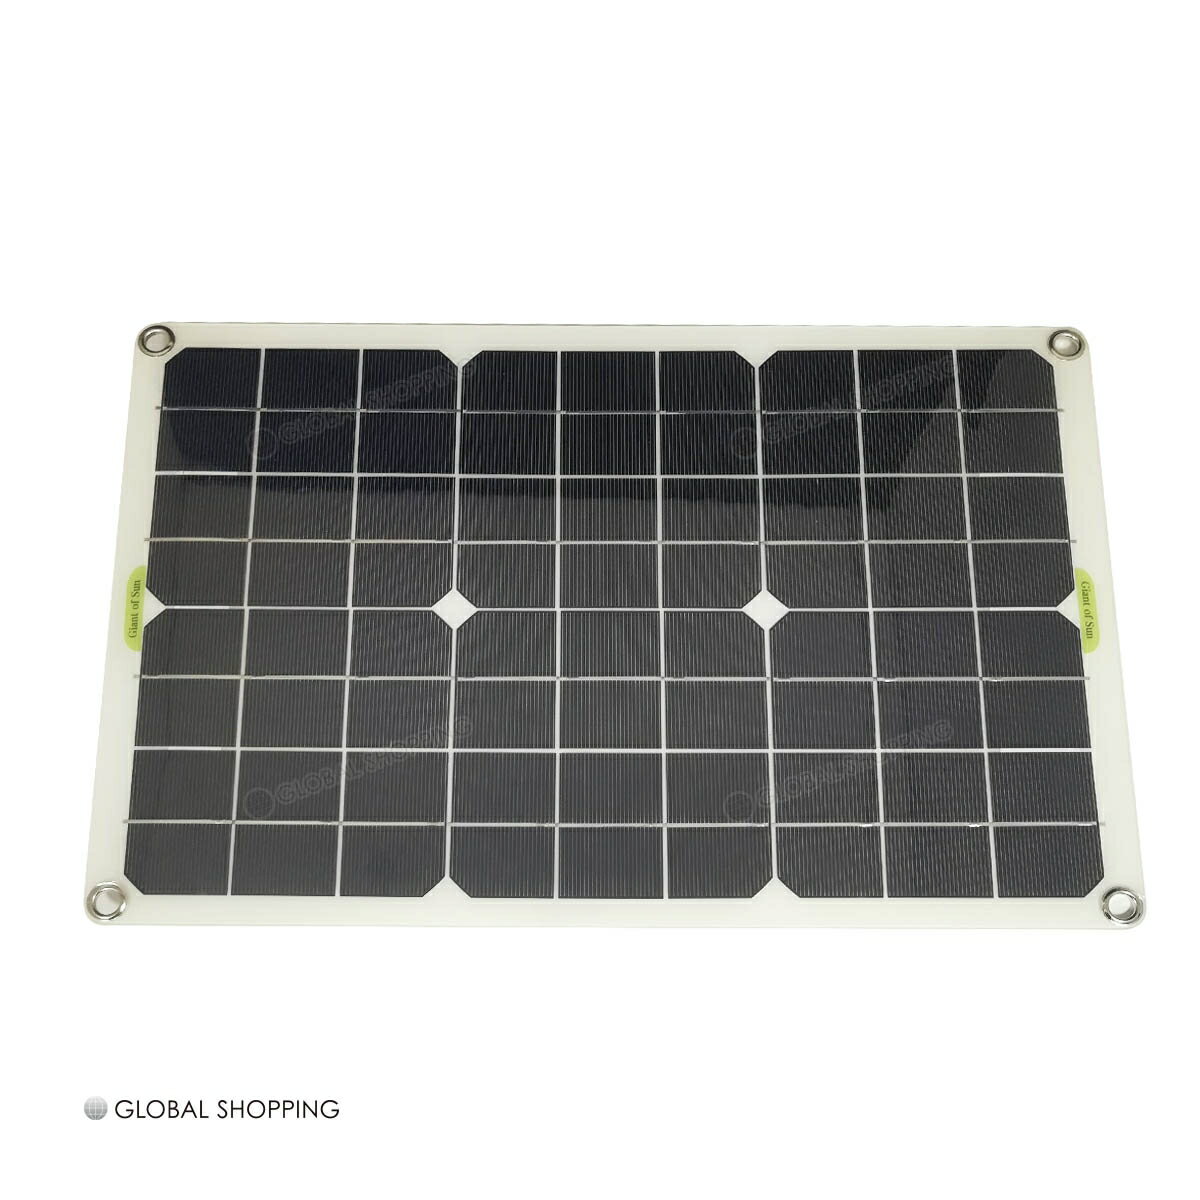 太陽光発電 20W ソーラー ソーラーパネル 太陽光パネル ソーラー発電 ソーラー電池 太陽電池発電 単結晶 省エネ 節電